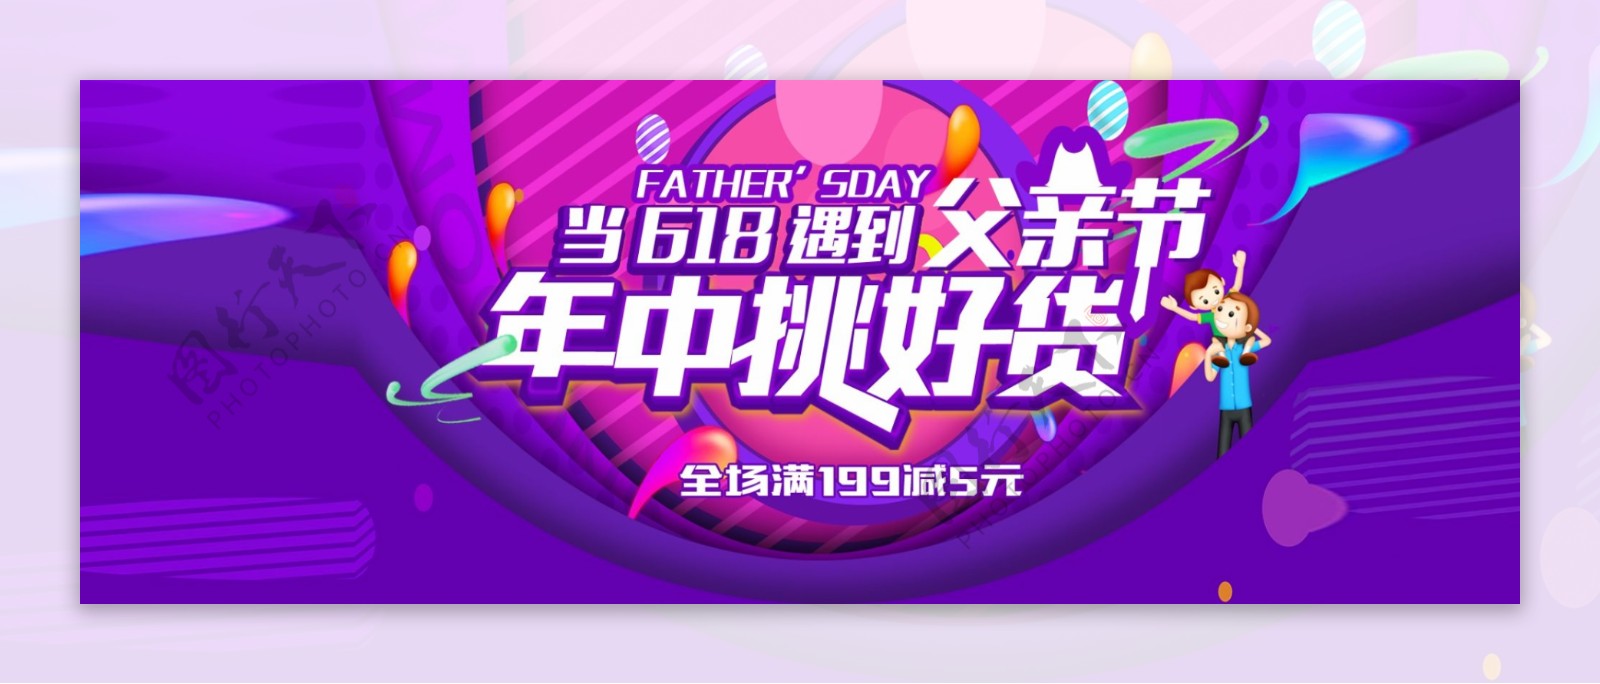 618父亲节满减促销淘宝天猫海报节日广告